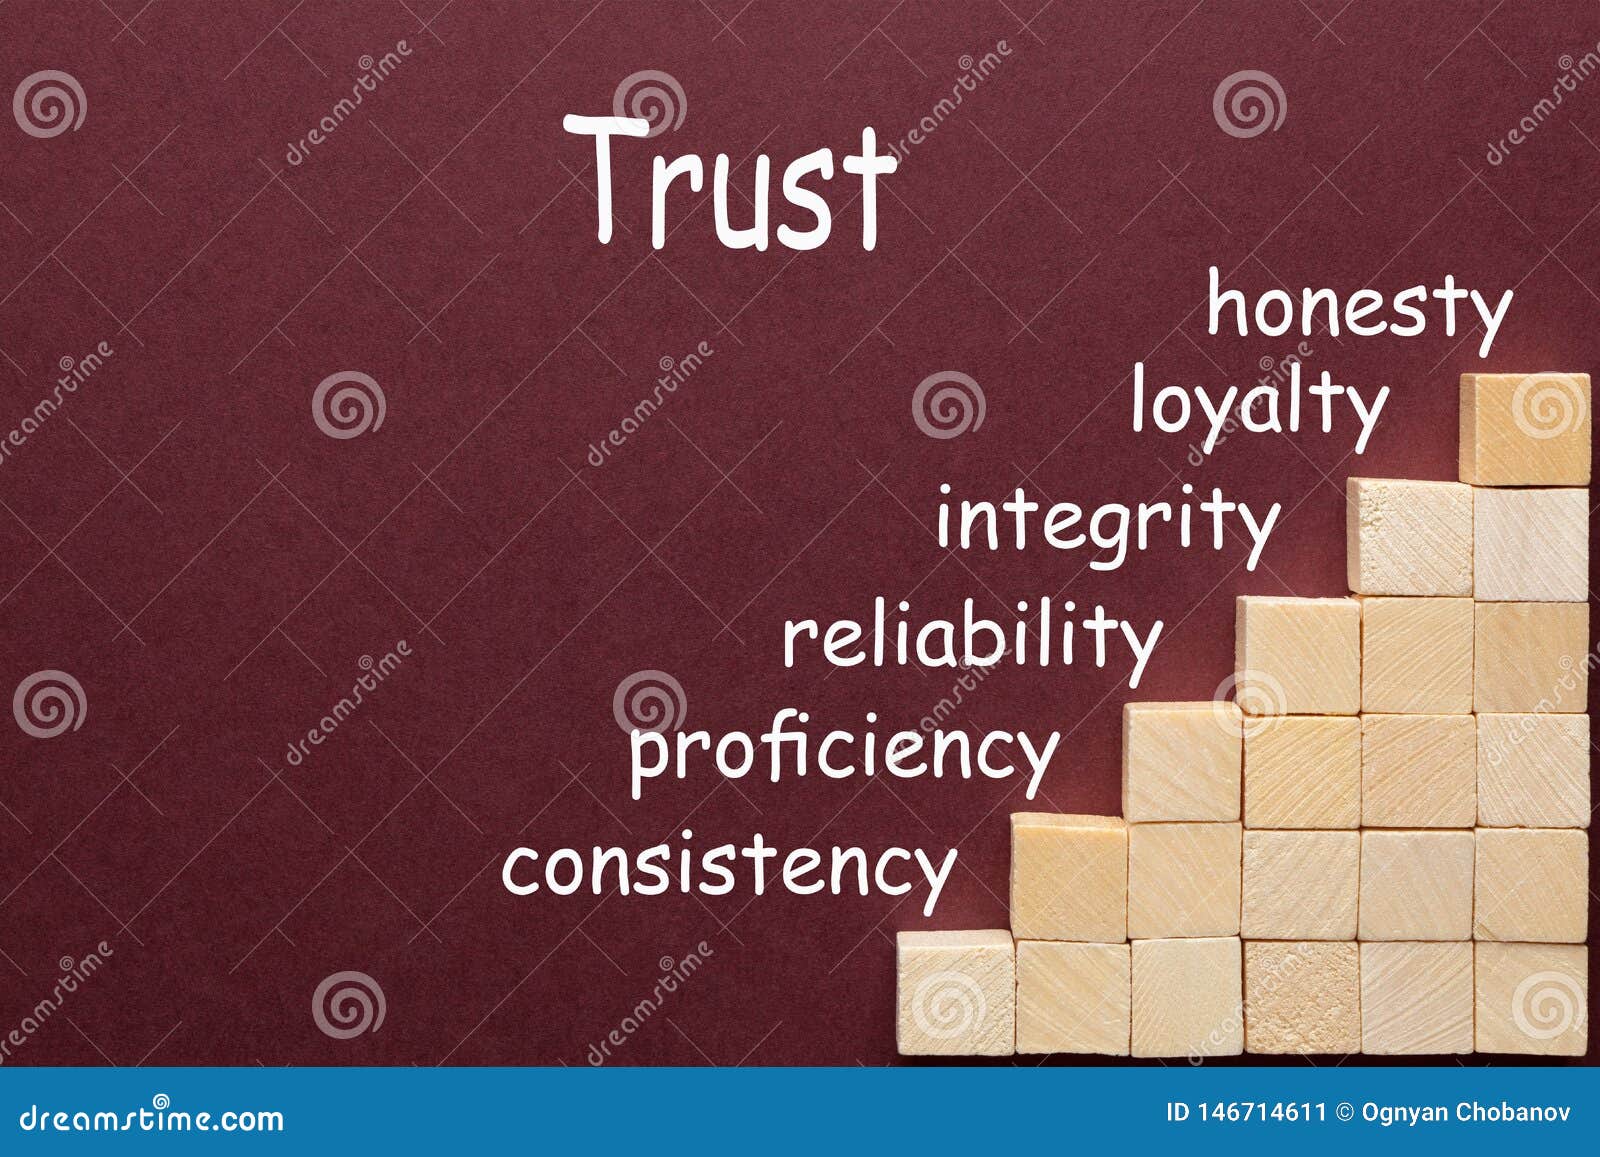 trust diagram concept